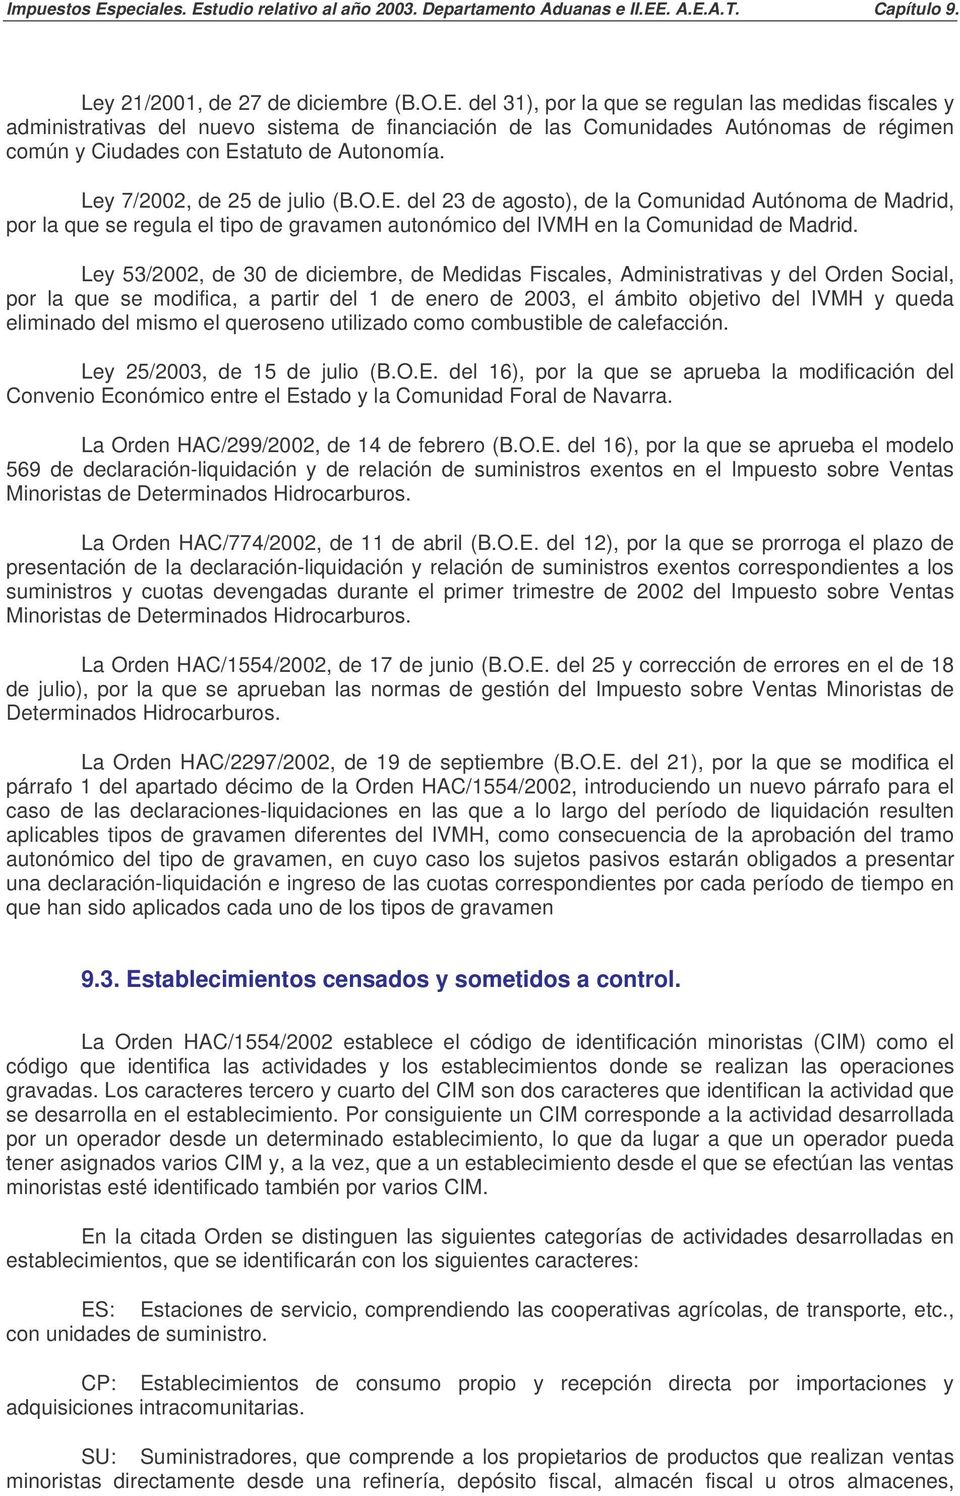 Ley 7/2002, de 25 de julio (B.O.E. del 23 de agosto), de la Comunidad Autónoma de Madrid, por la que se regula el tipo de gravamen autonómico del IVMH en la Comunidad de Madrid.